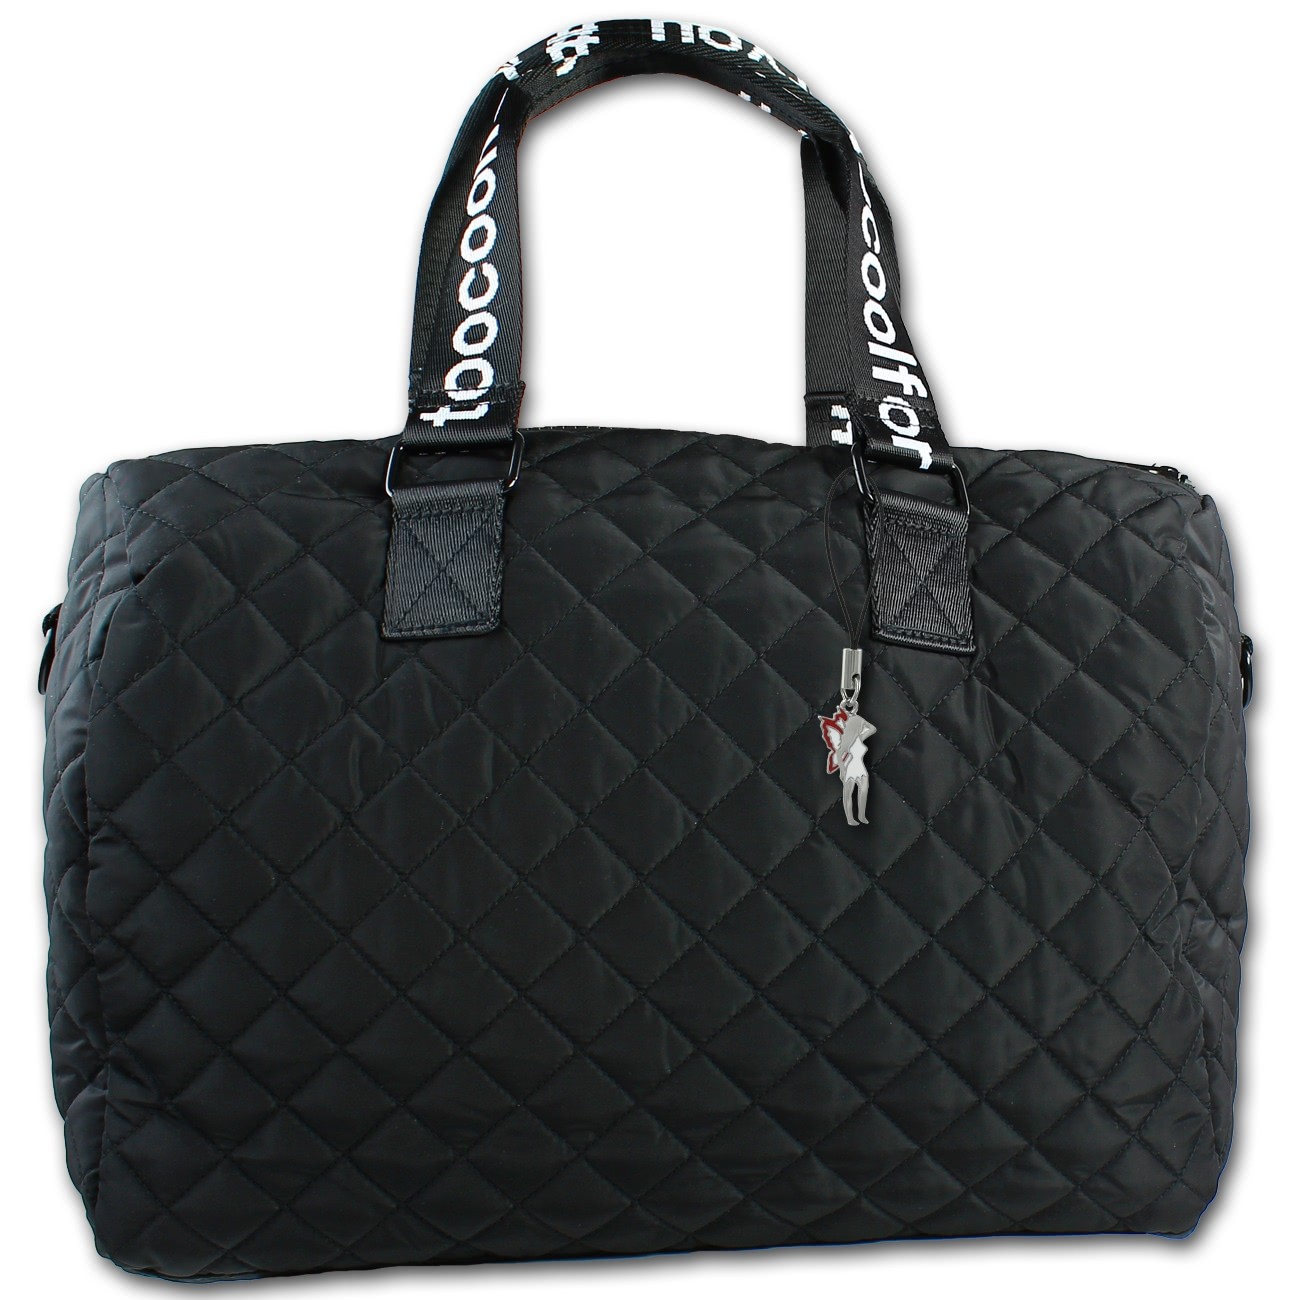 New Bags gesteppte Bellevory Sport Reisetasche schwarz Gepäcktasche OTD2210S